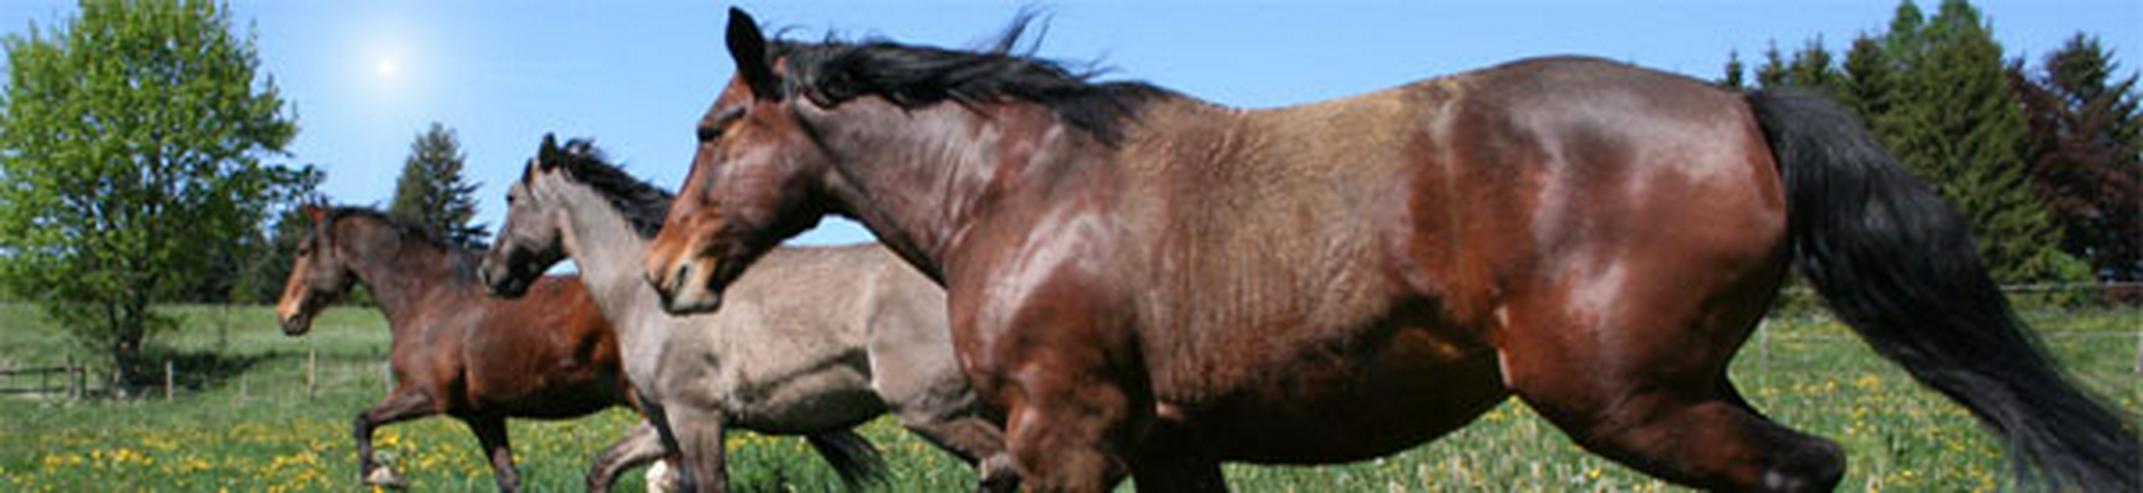 Geschenk Tipp! Intensiv Hufseminar für Pferdefreunde - Beauty & Gesundheit - Bild 2